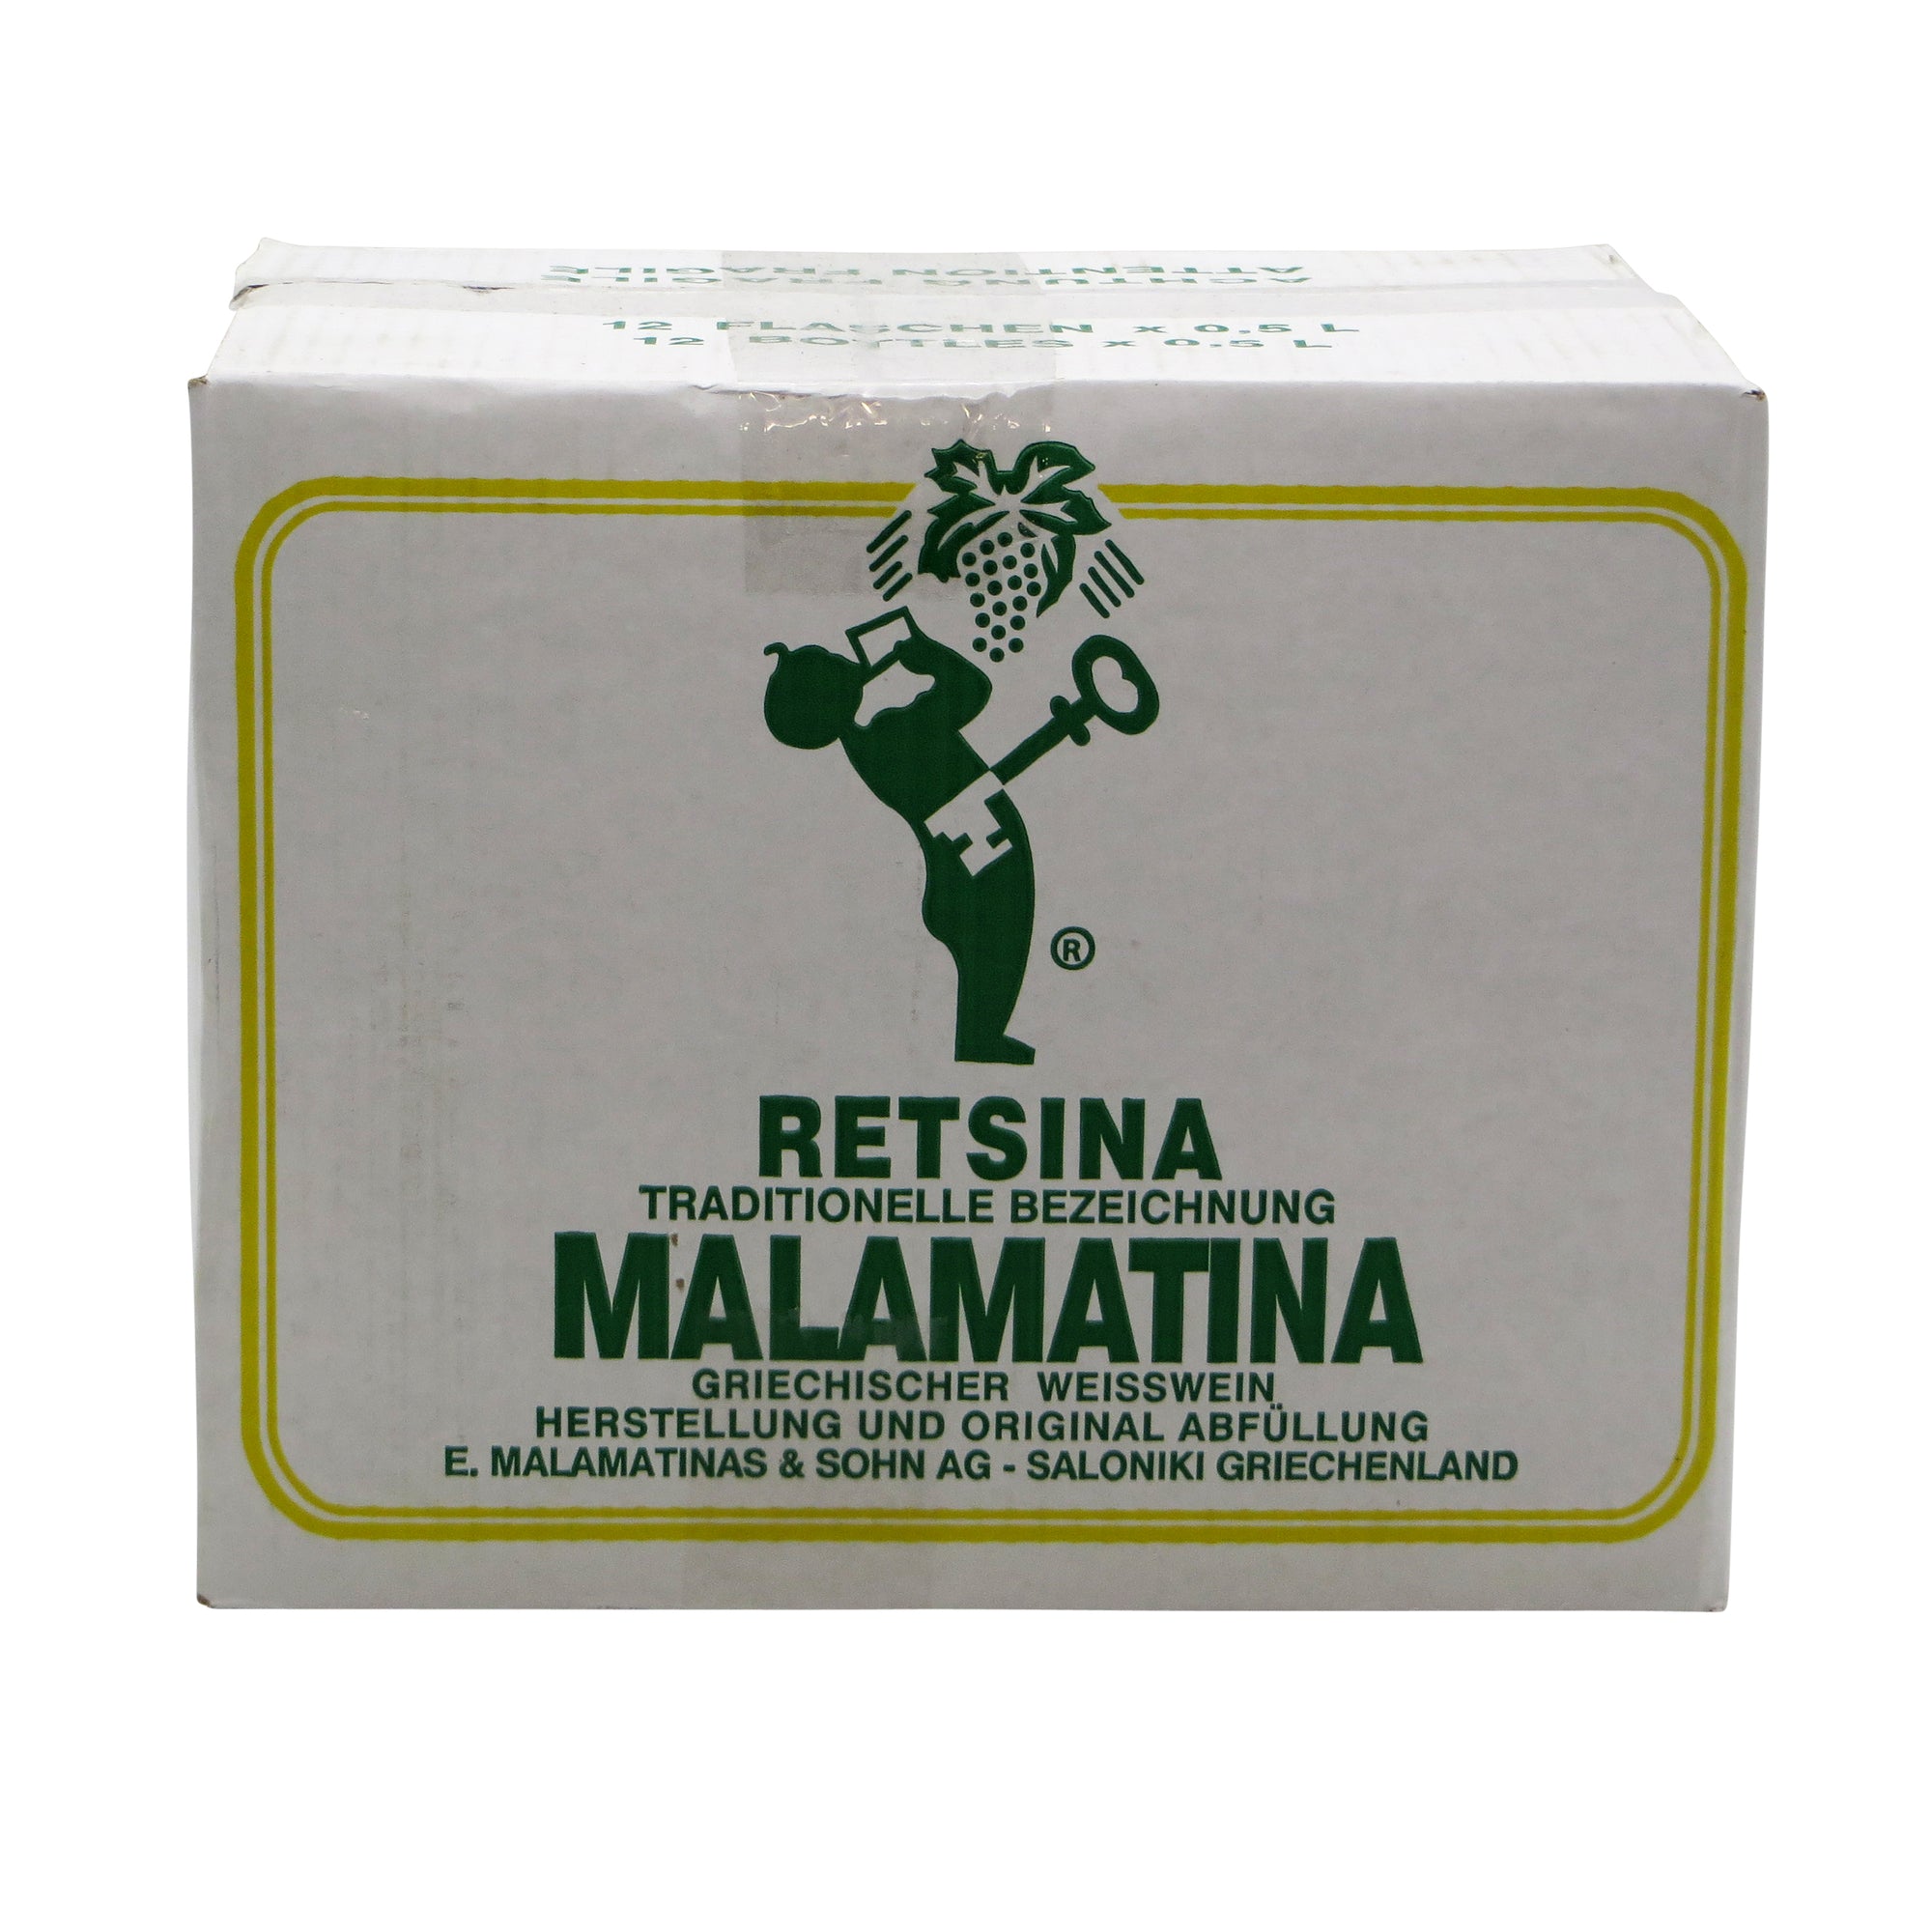 12 pack - Malamatina Retsina 500ml